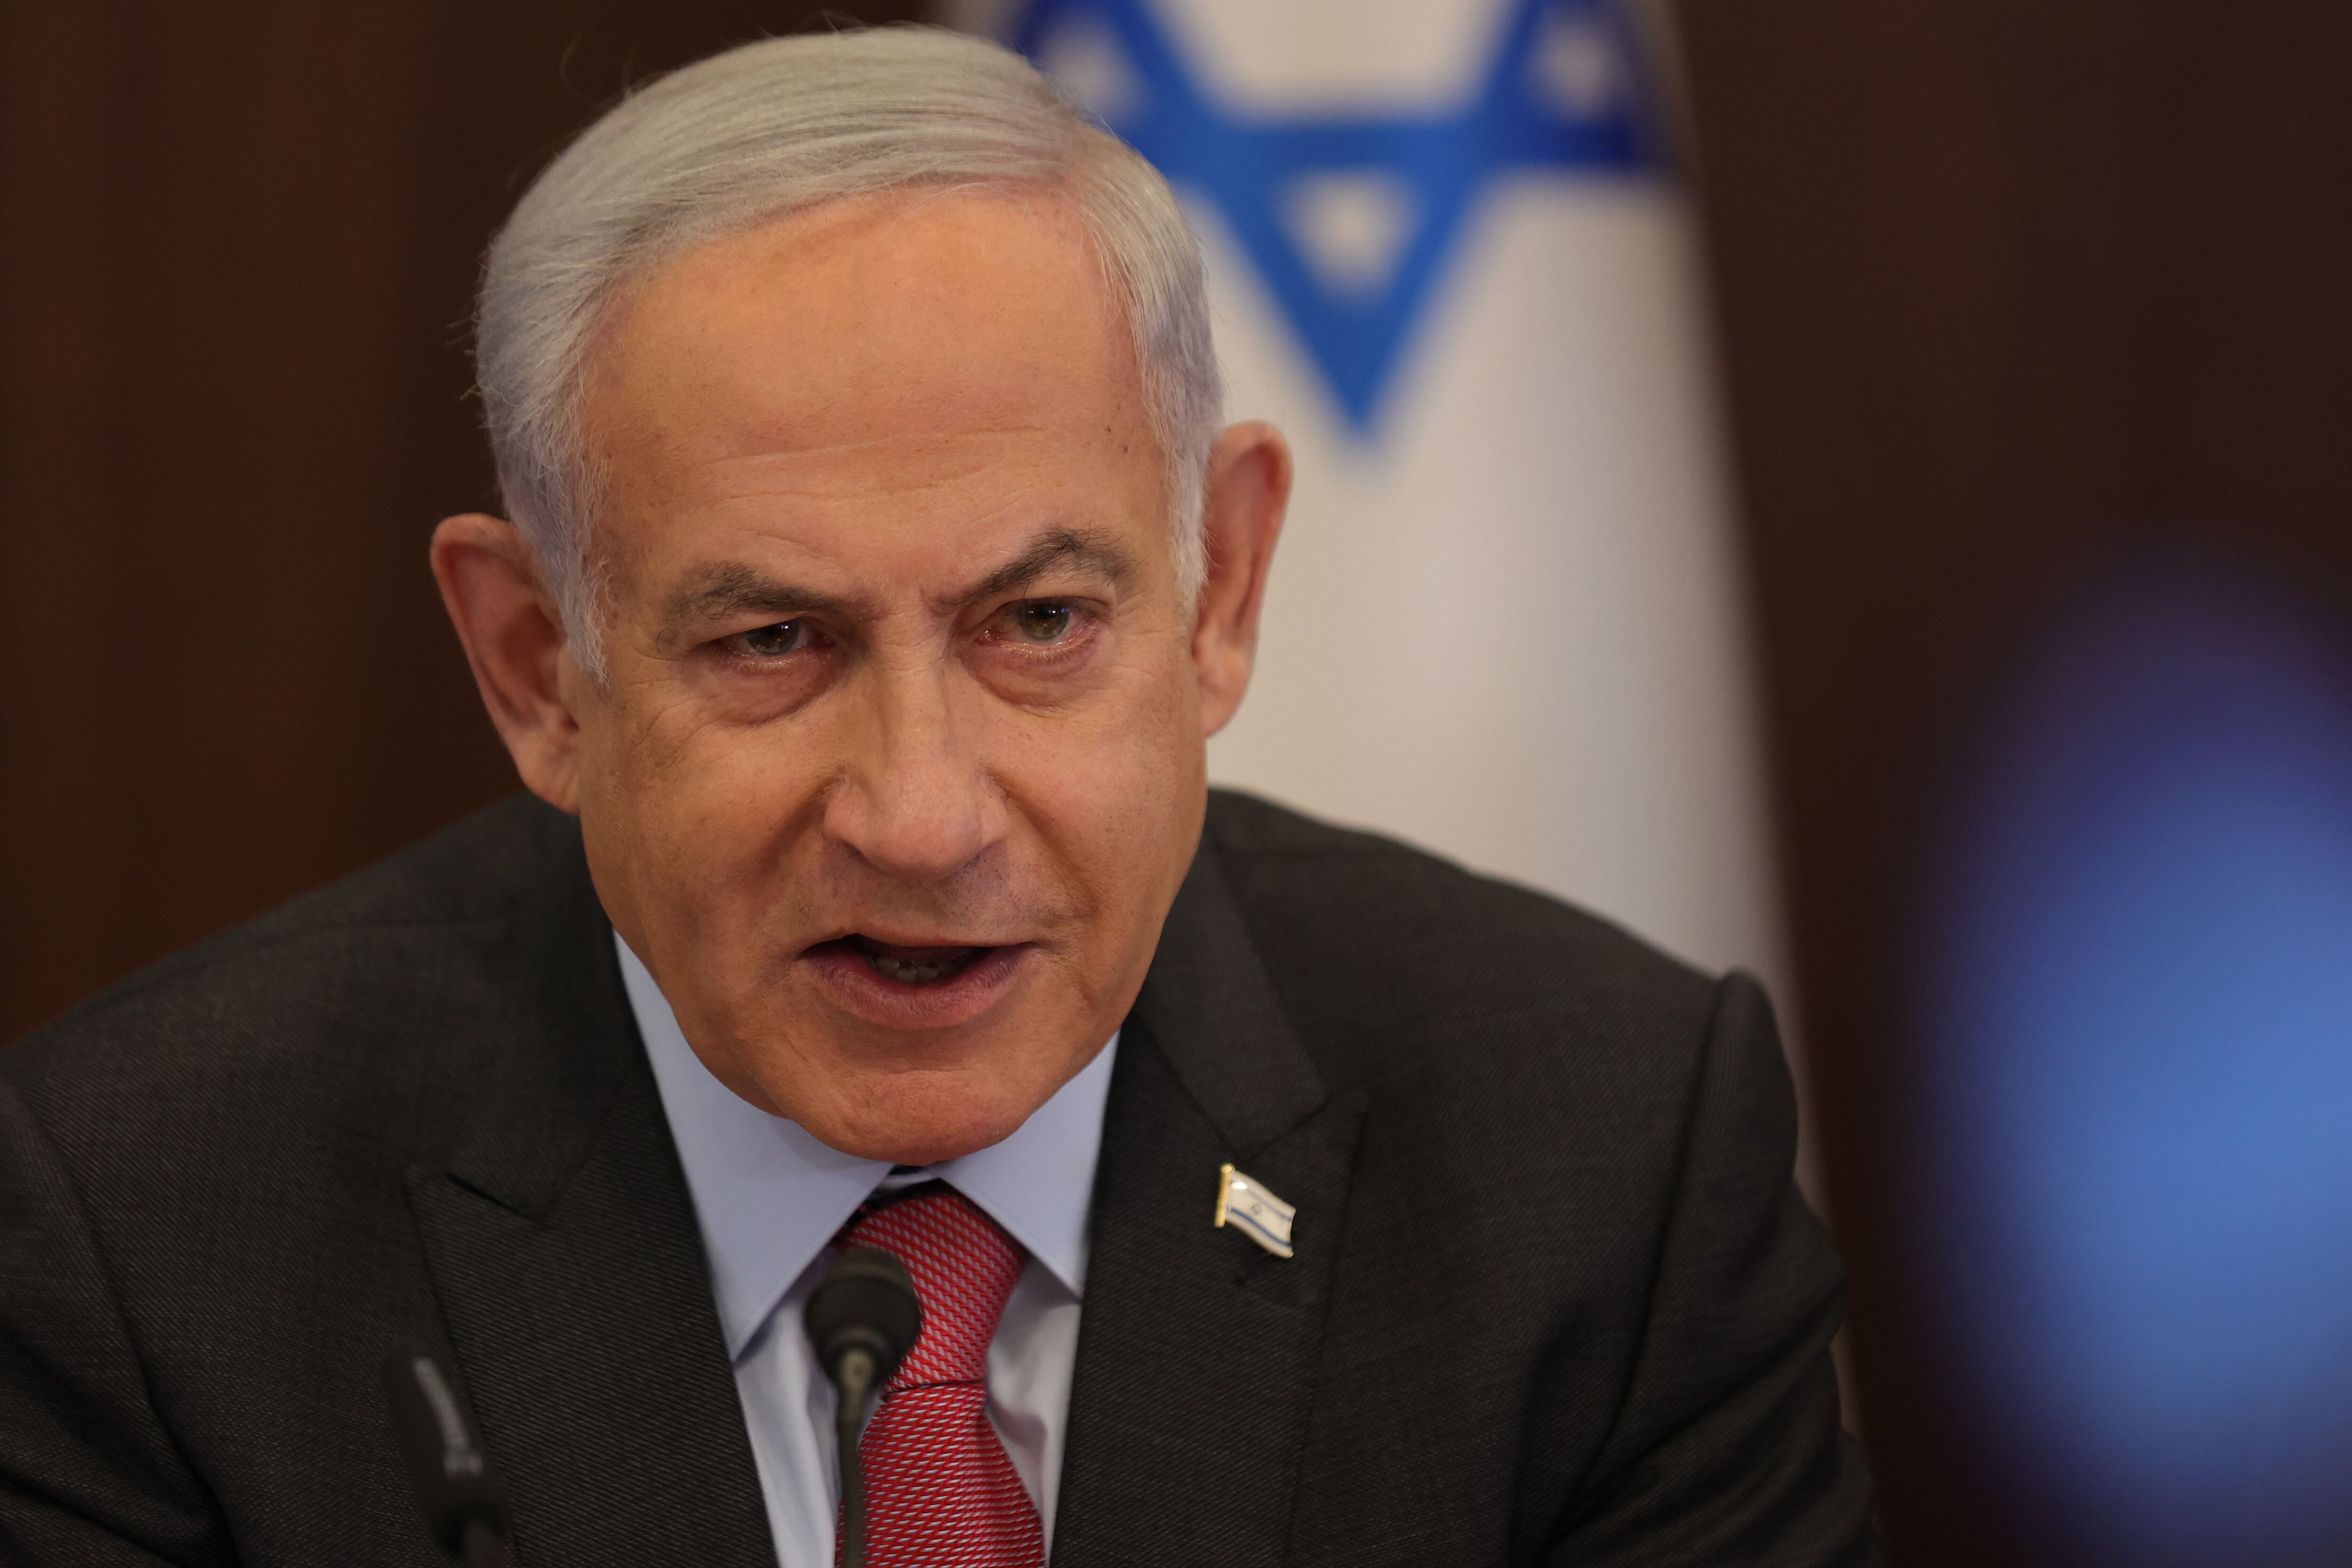 Benjamin Netanyahu despidió a Ministro que solicitó ‘pausar’ polémica reforma judicial en Israel